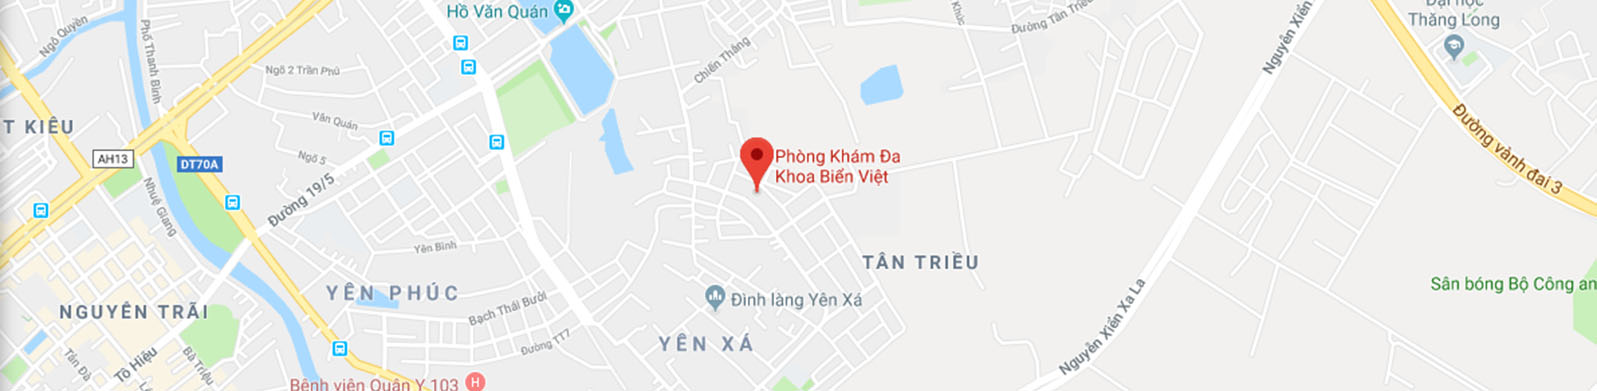 Phòng khám đa khoa Biển Việt – Nơi chăm sóc sức khỏe cho các nhóm cộng đồng LGBT và người chung sống với HIV tại Việt Nam